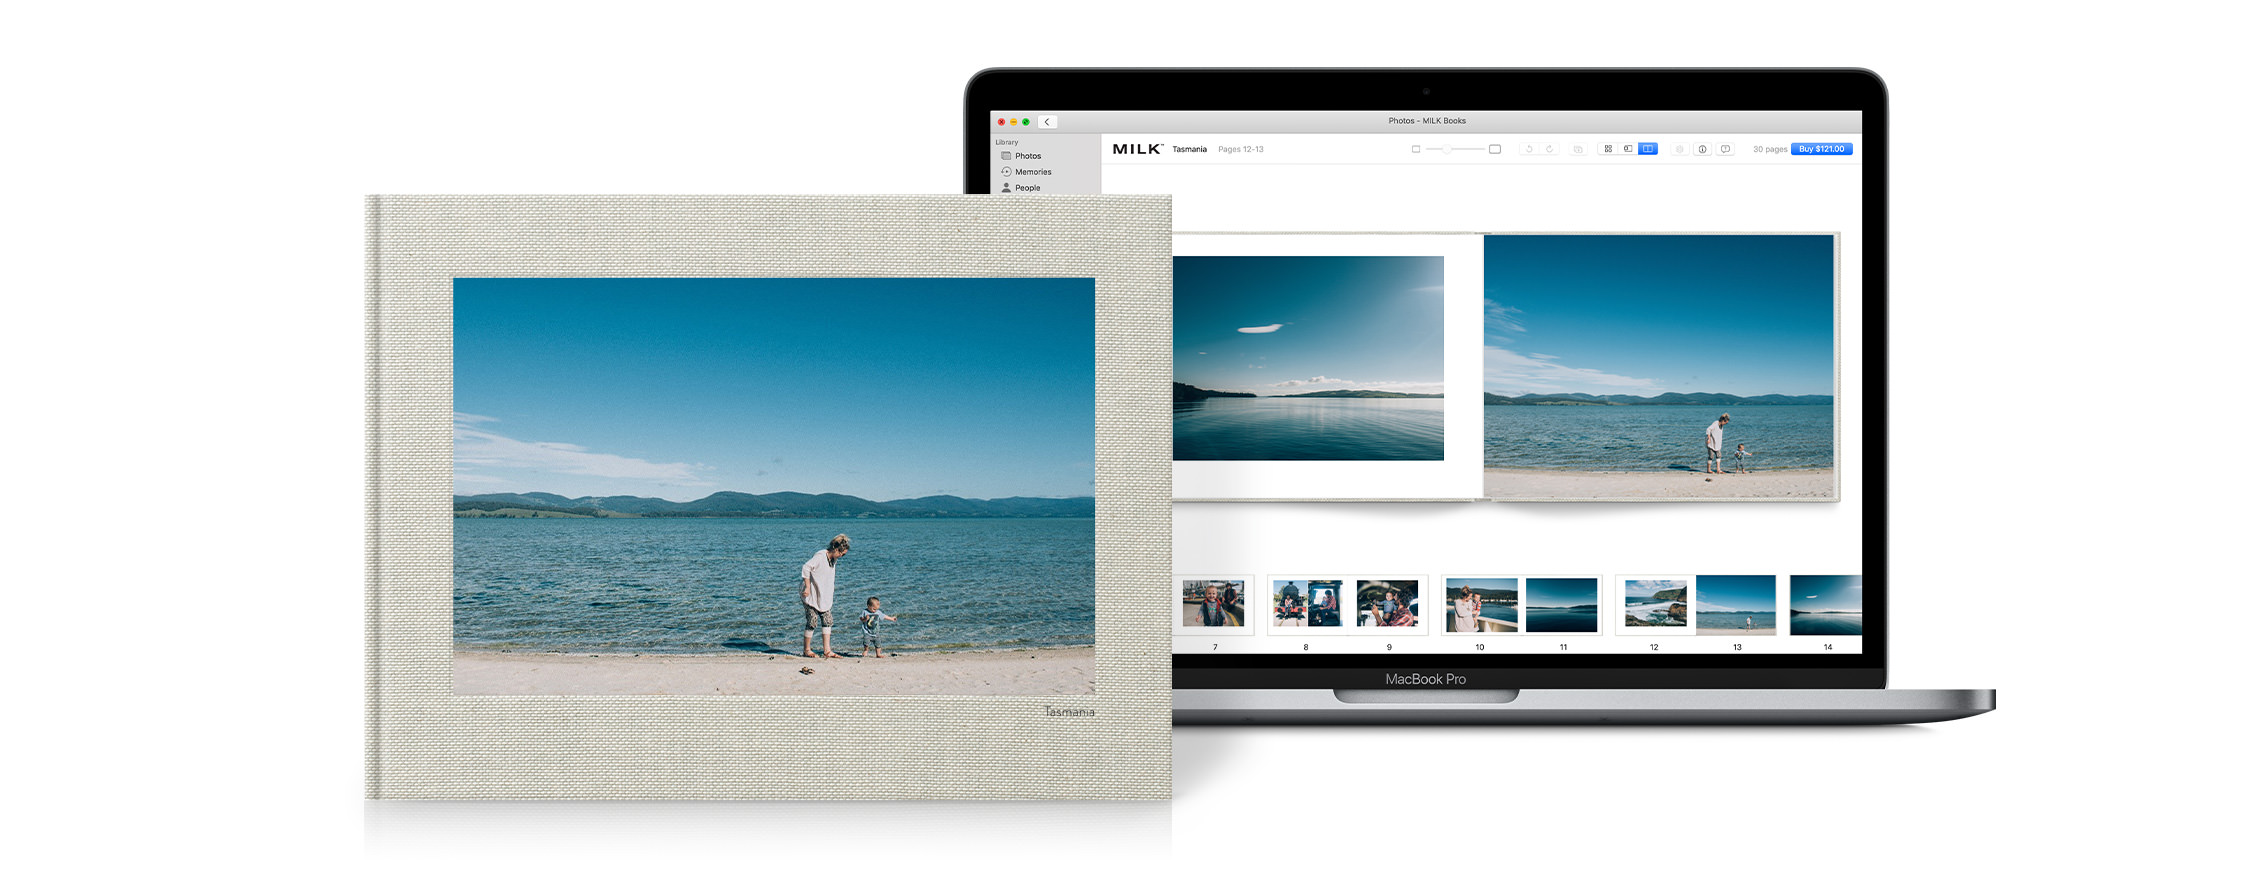 Macbook ouvert pour montrer l'extension de projet pour Apple Photos. Livre photo avec produit fini.